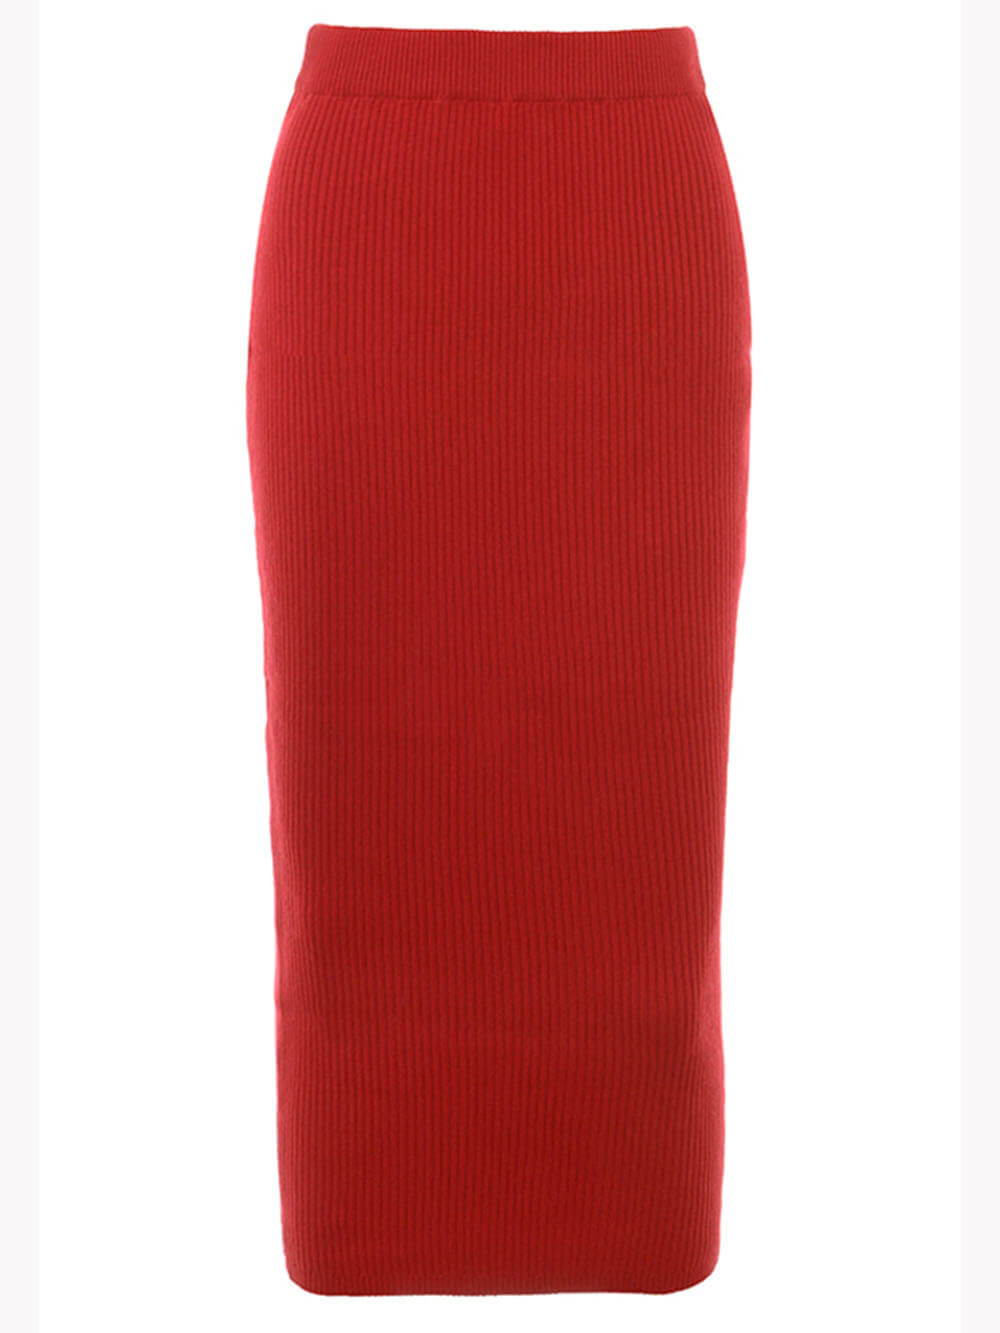 Rødt strikket maxi-skjørt